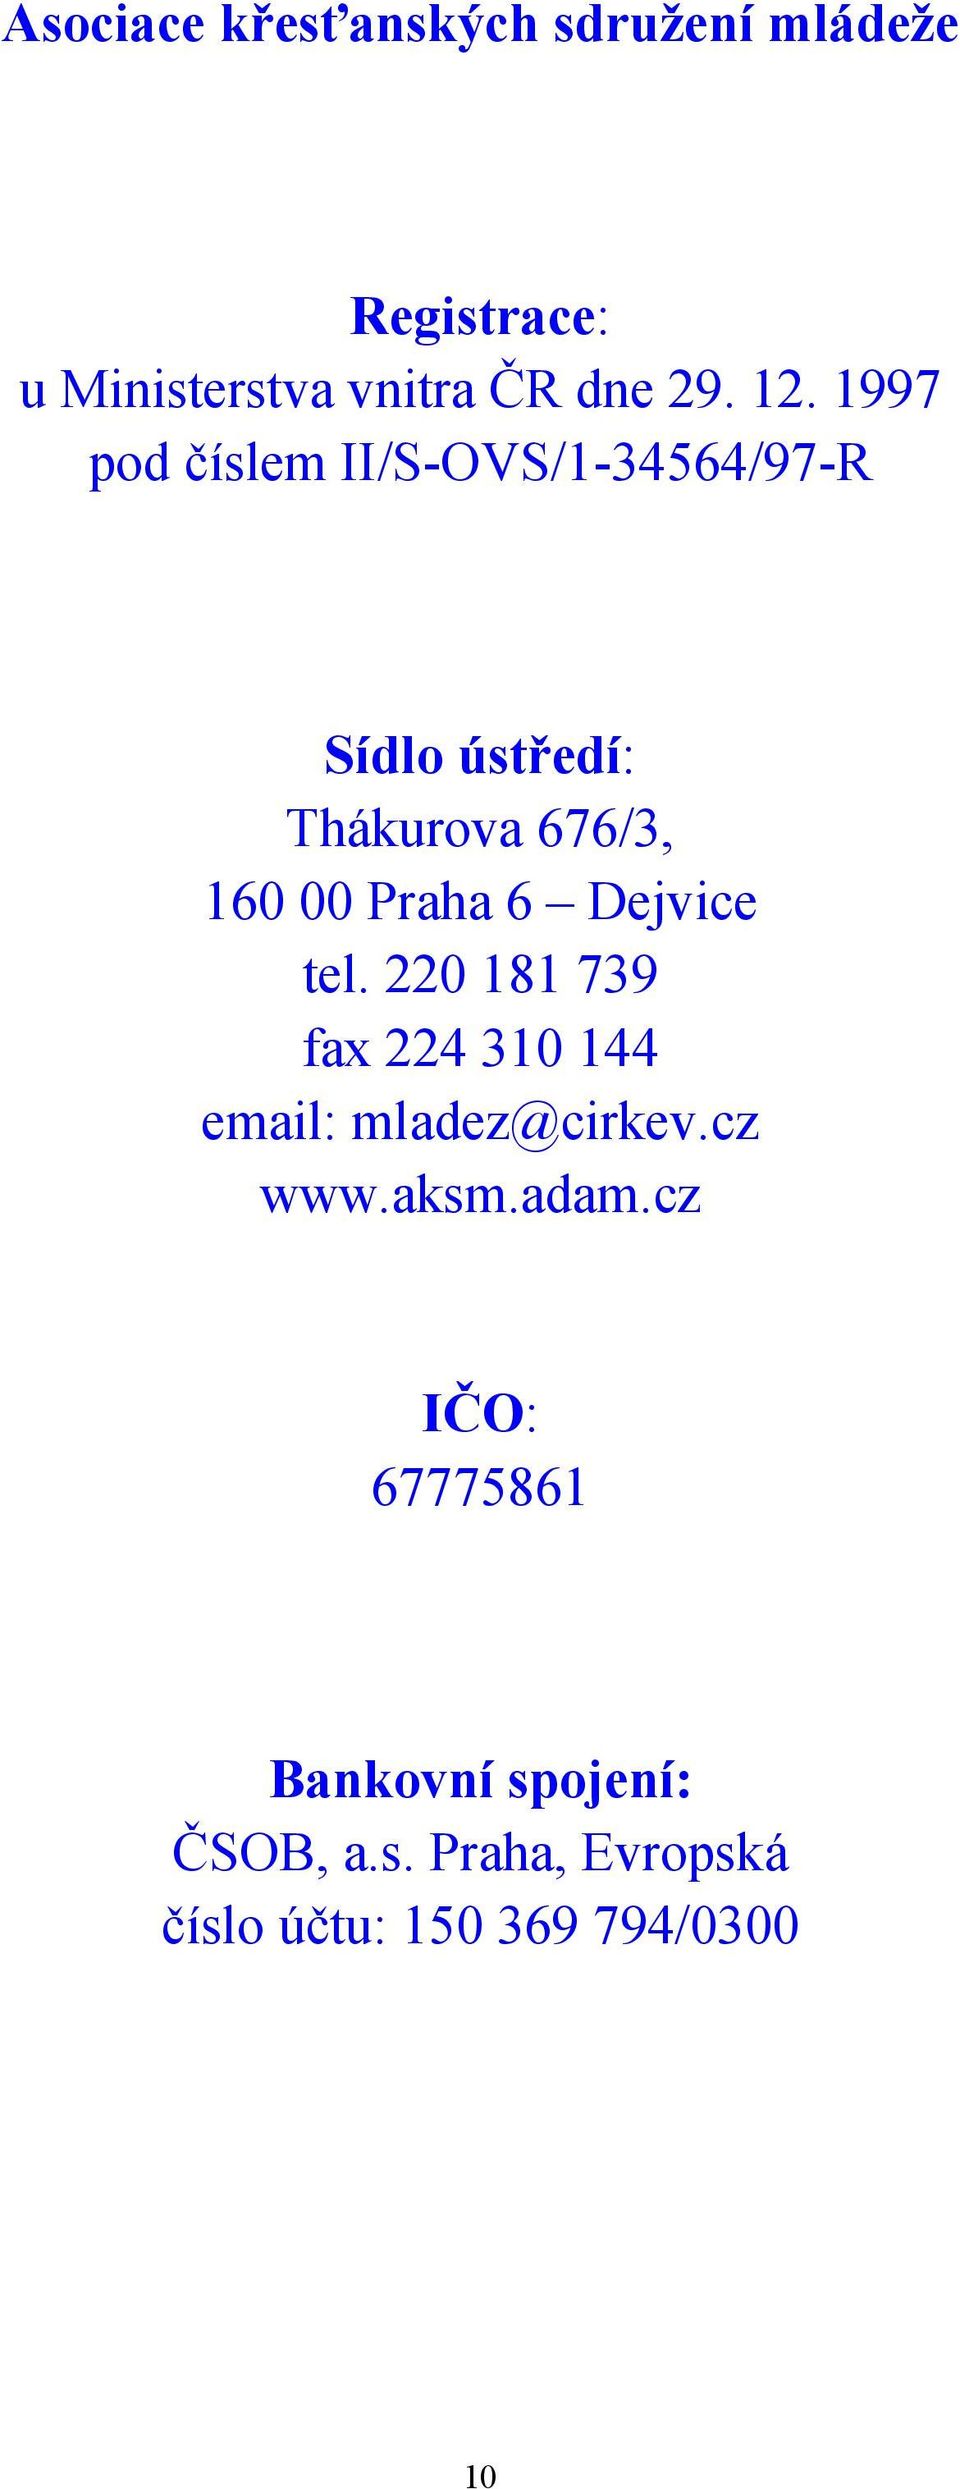 Dejvice tel. 220 181 739 fax 224 310 144 email: mladez@cirkev.cz www.aksm.adam.